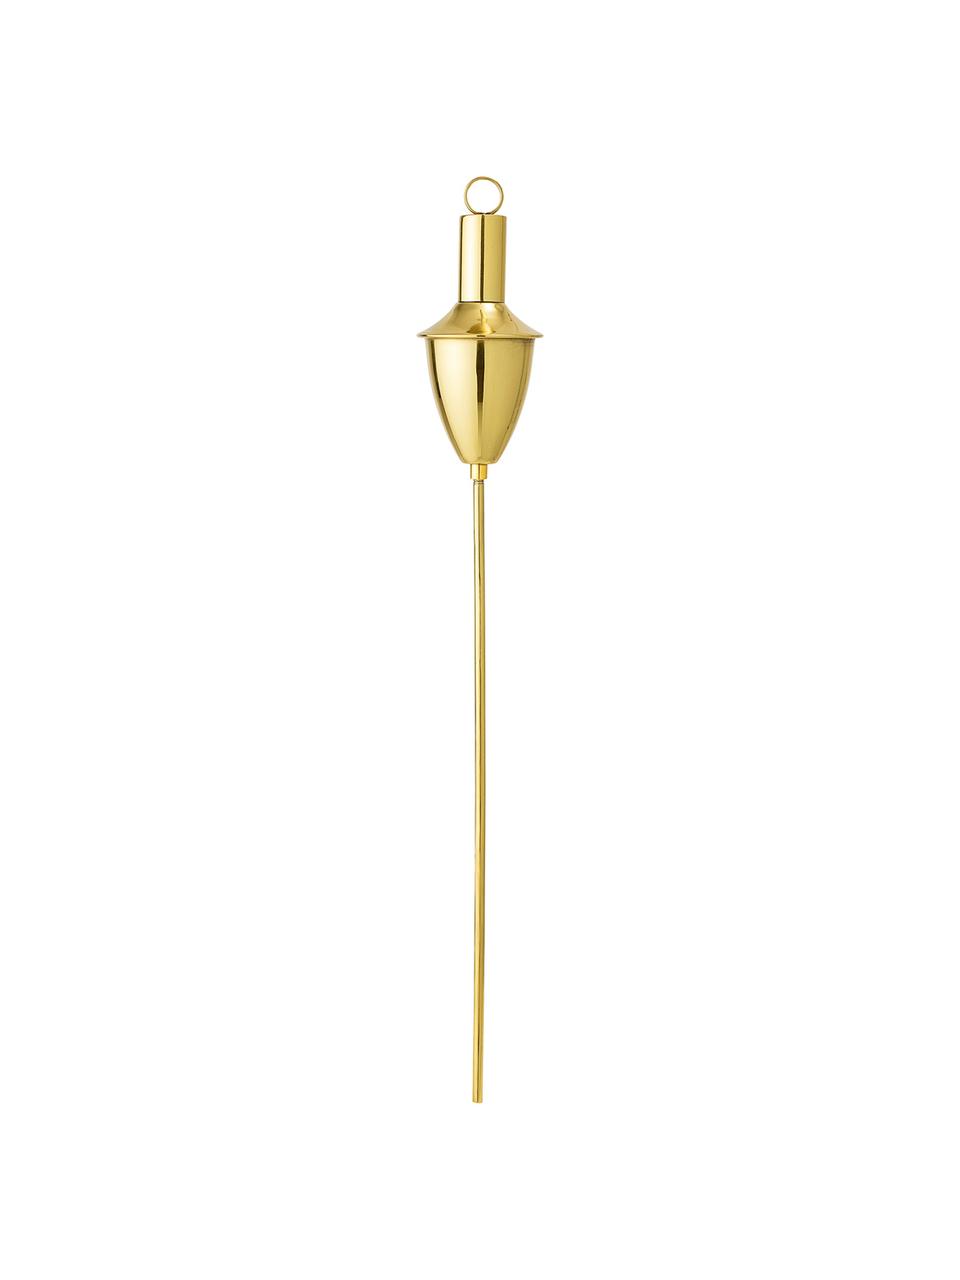 XS-Gartenfackel Gold, Edelstahl, vermessingt, Messingfarben, Ø 7 x H 63 cm